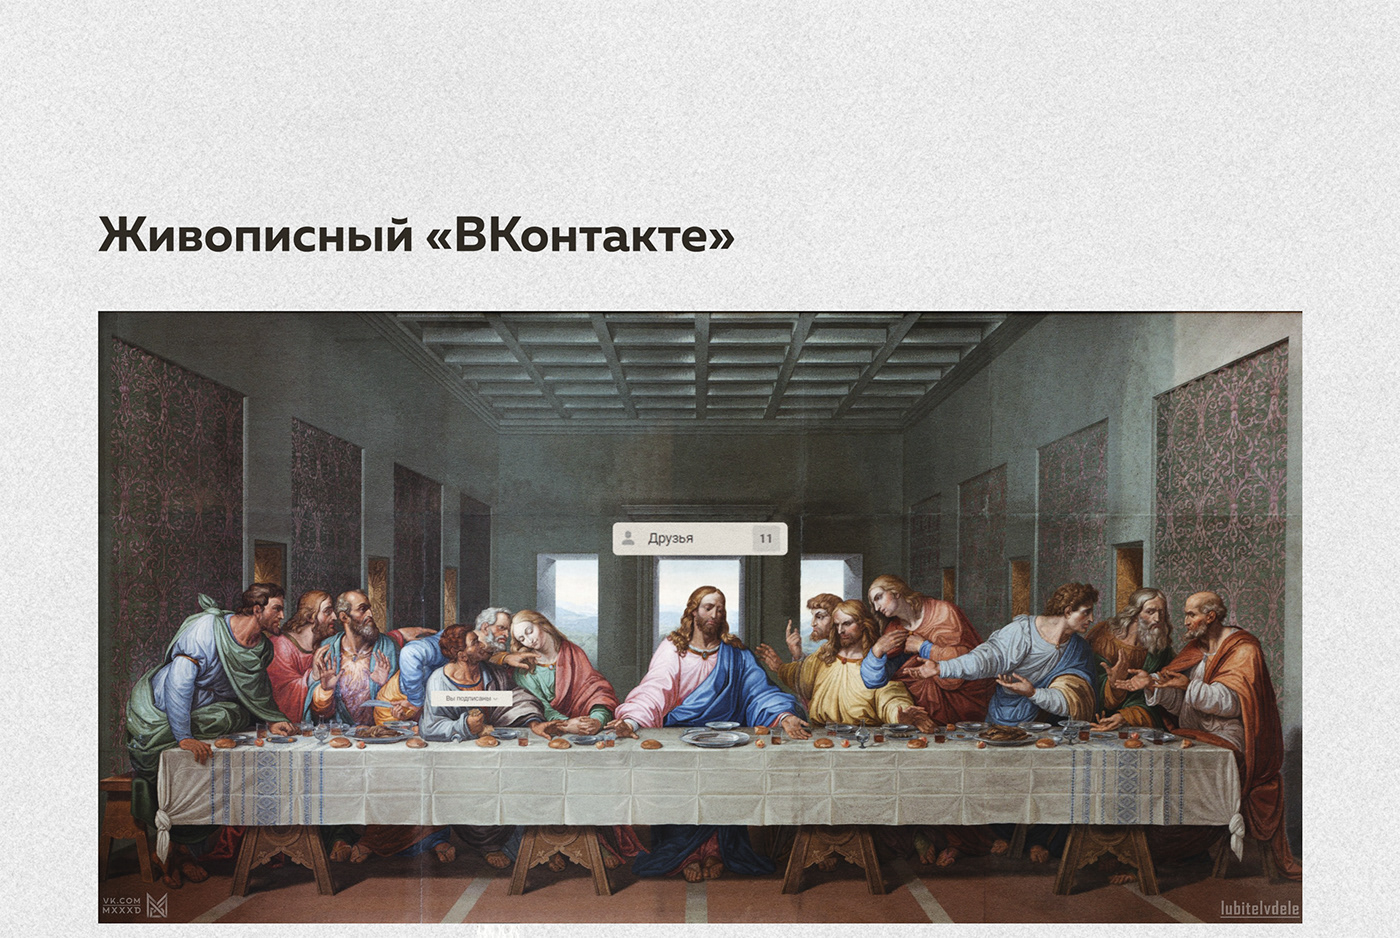 collage jesus Renaissance Da Vinci magritte art painting   Post modern Russia вконтакте